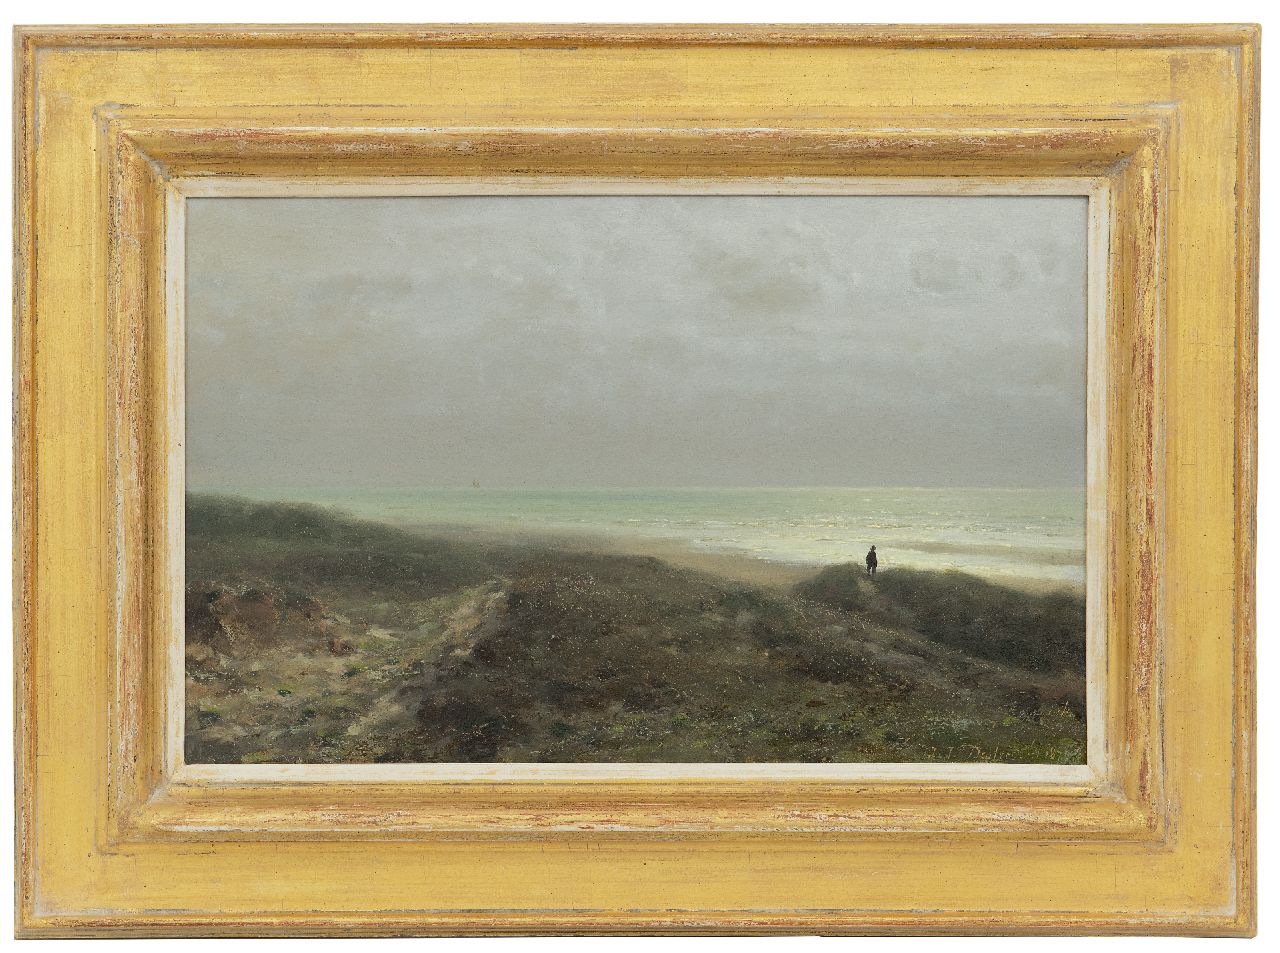 Destrée J.J.  | Johannes Josephus Destrée, A dune landscape with a figure watching the sea, oil on panel 27.6 x 43.8 cm, signed l.r. and dated 1879